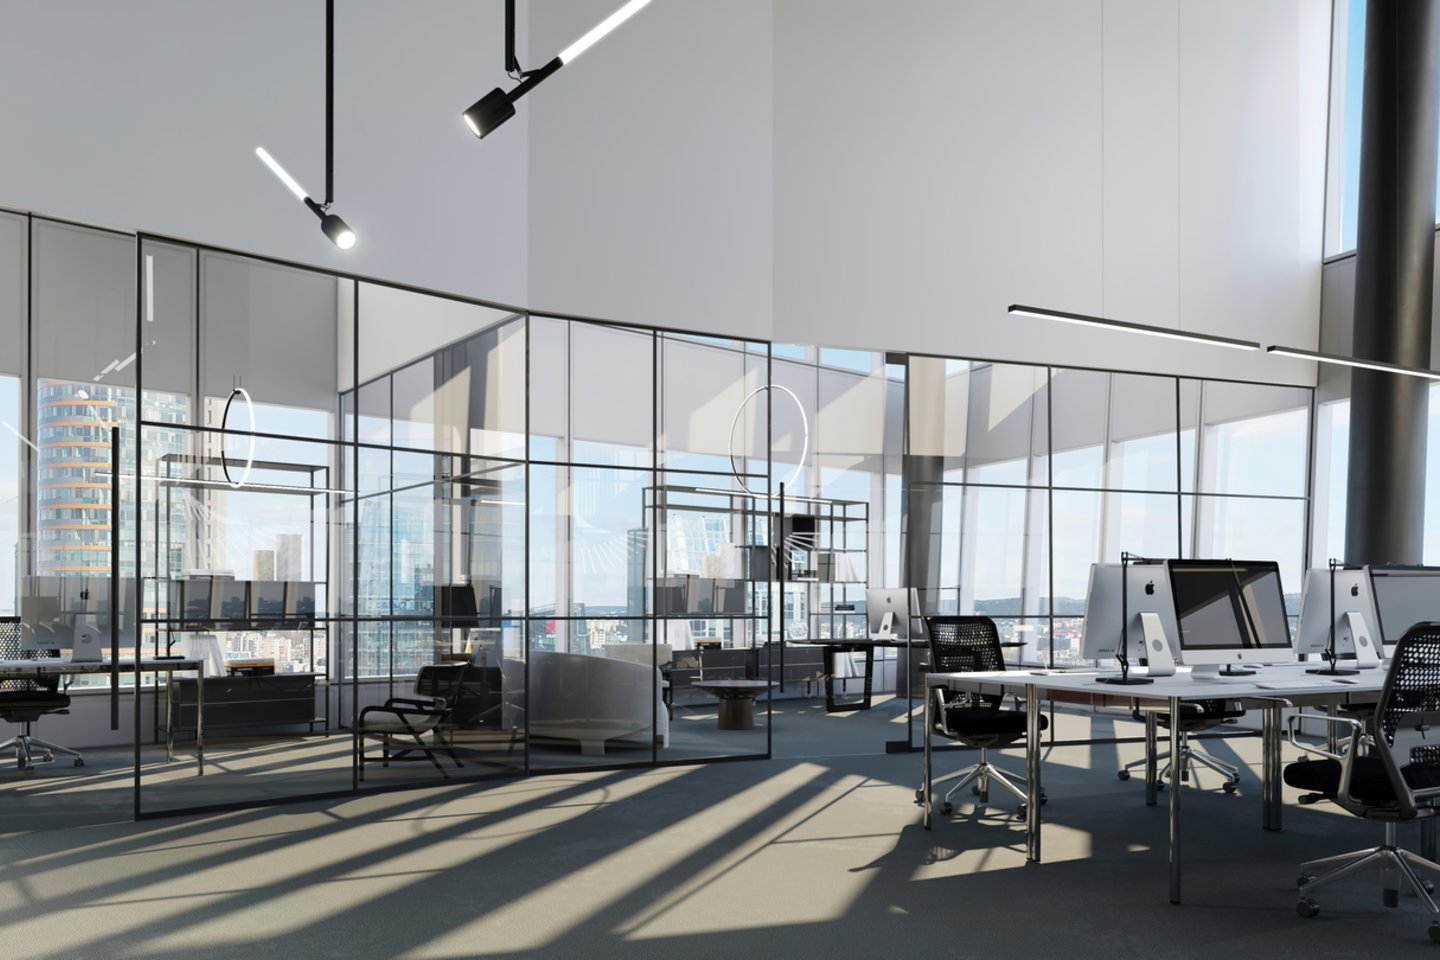 Verslo centro statybas planuojama užbaigti kitų metų rugsėjį tačiau pastate jau dabar išnuomota maždaug trečdalis (7 tūkst. kv. m) rinkai siūlomo biuro patalpų ploto.<br>„Studio Libeskind“ vizual.